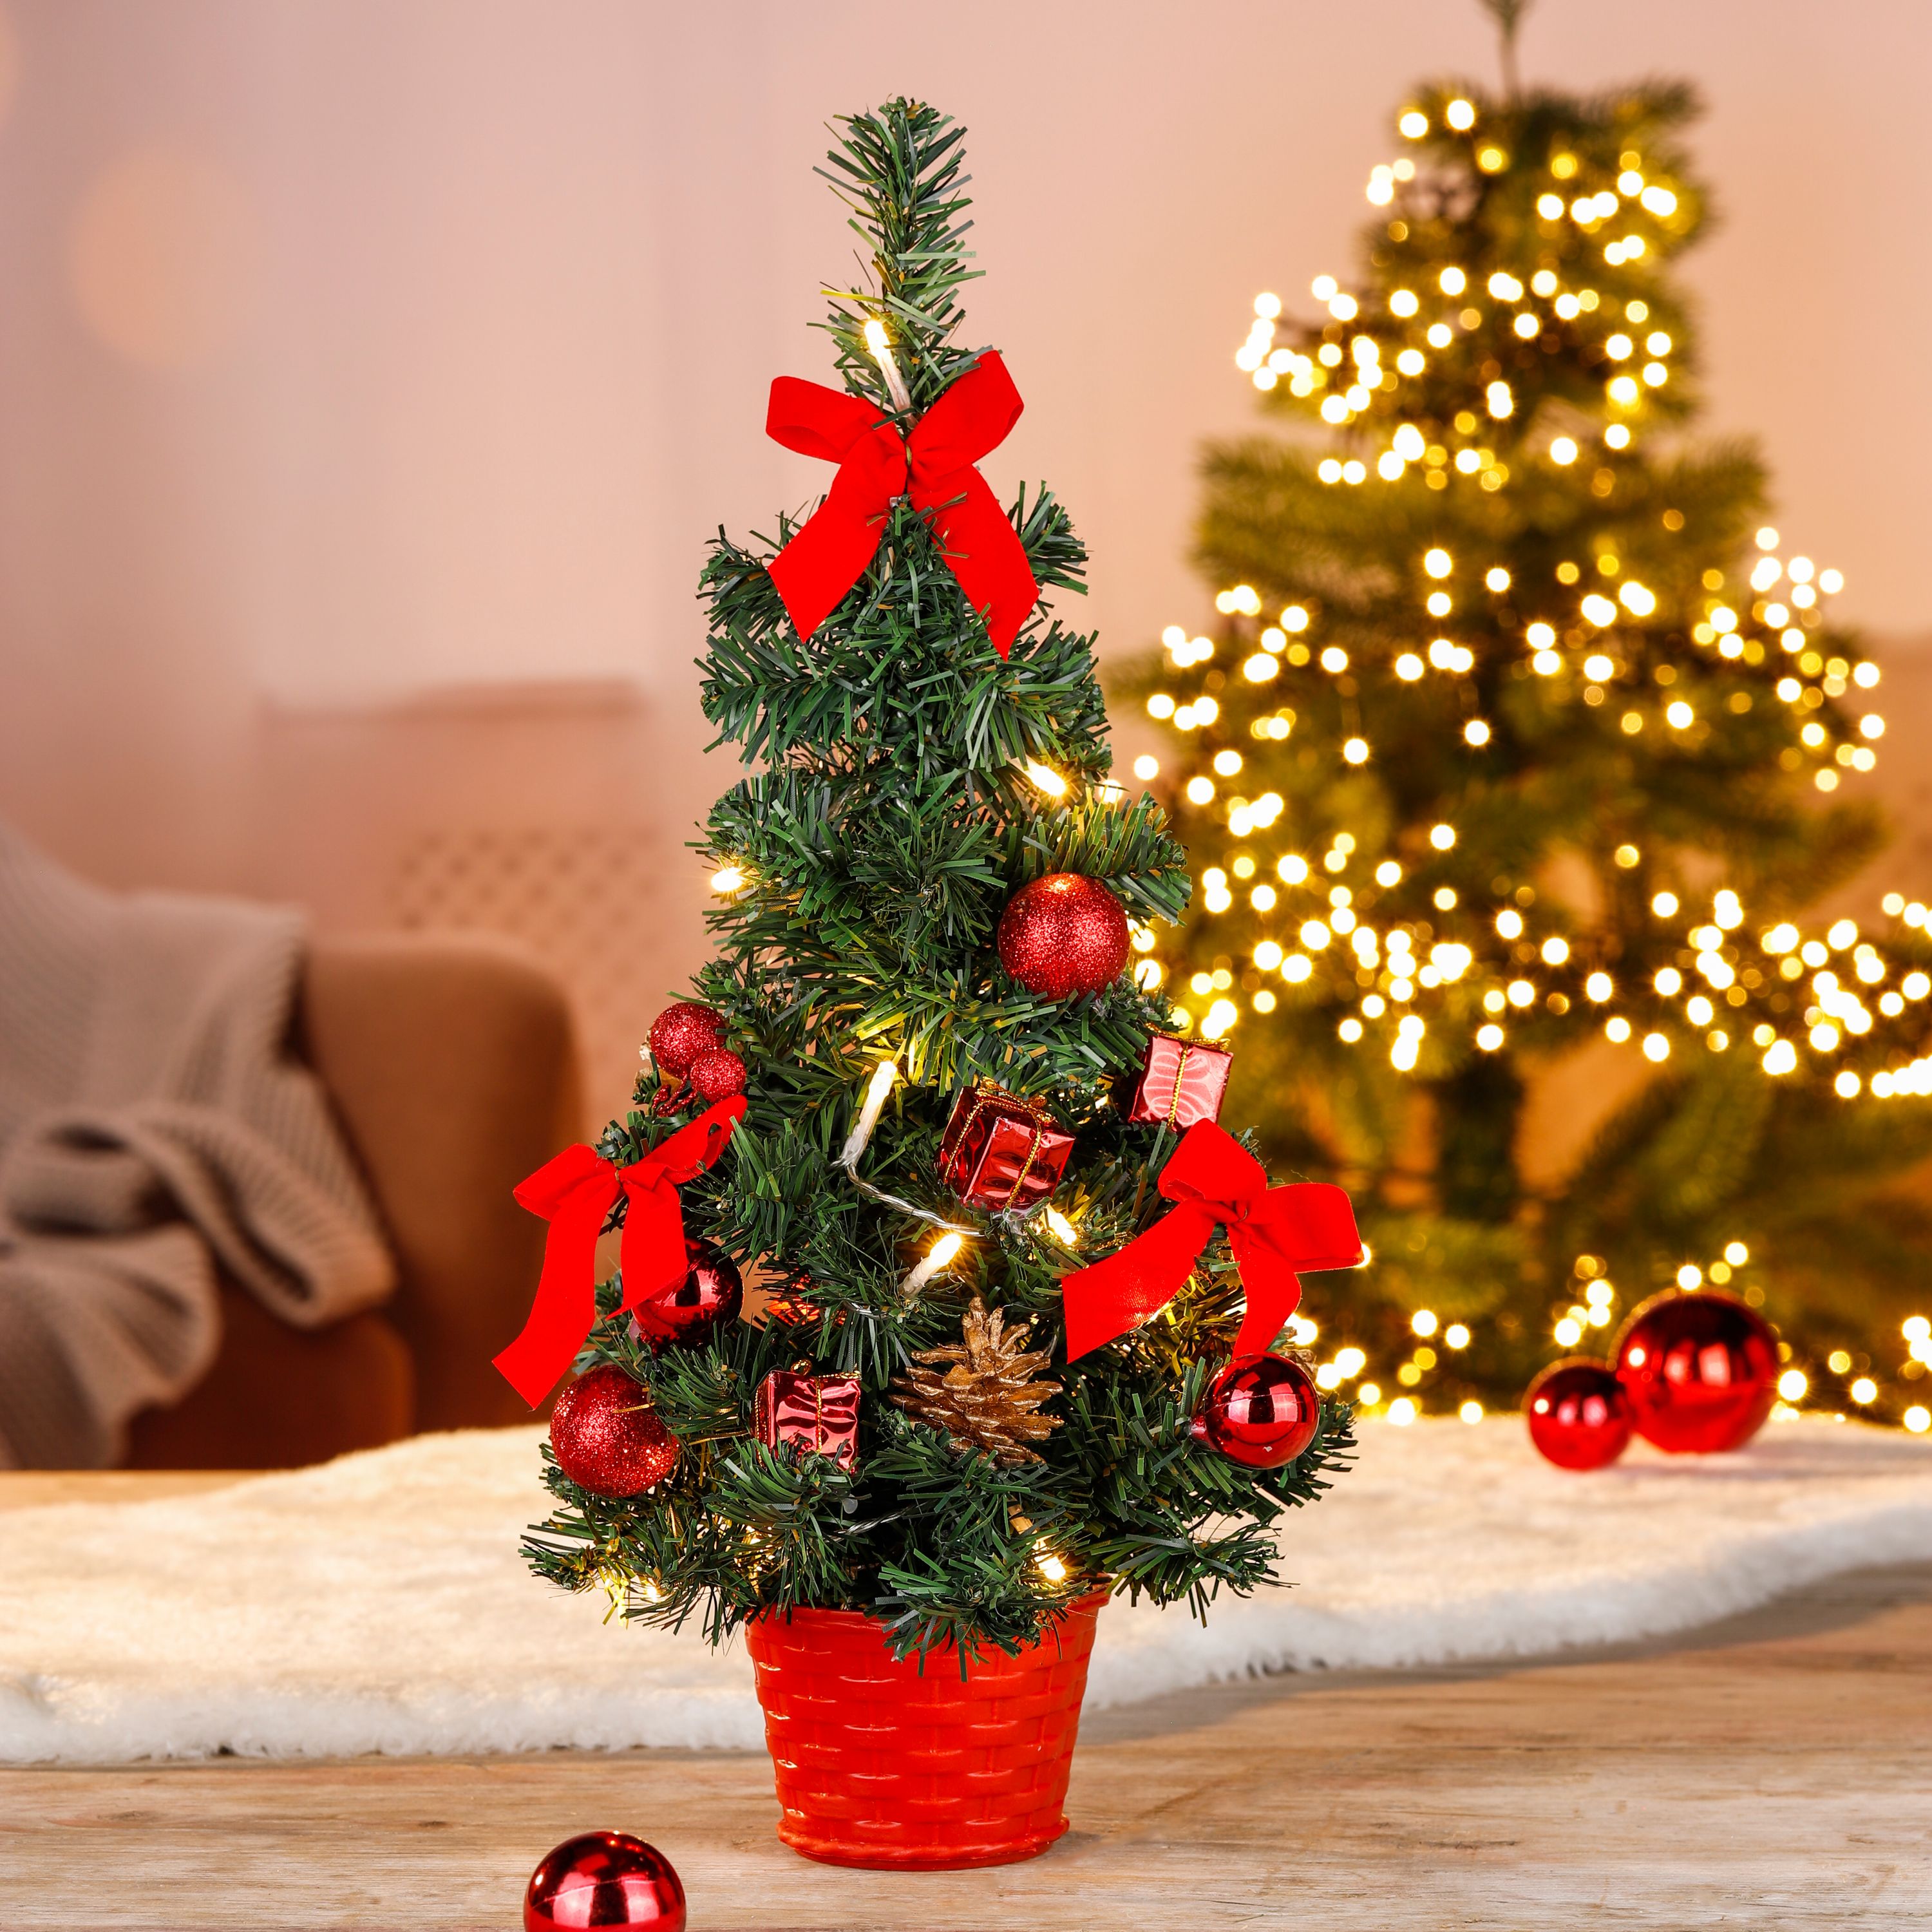 Weihnachten, Weihnachtsdekorationen, Festival, Pflanze, Weihnachtsbaum